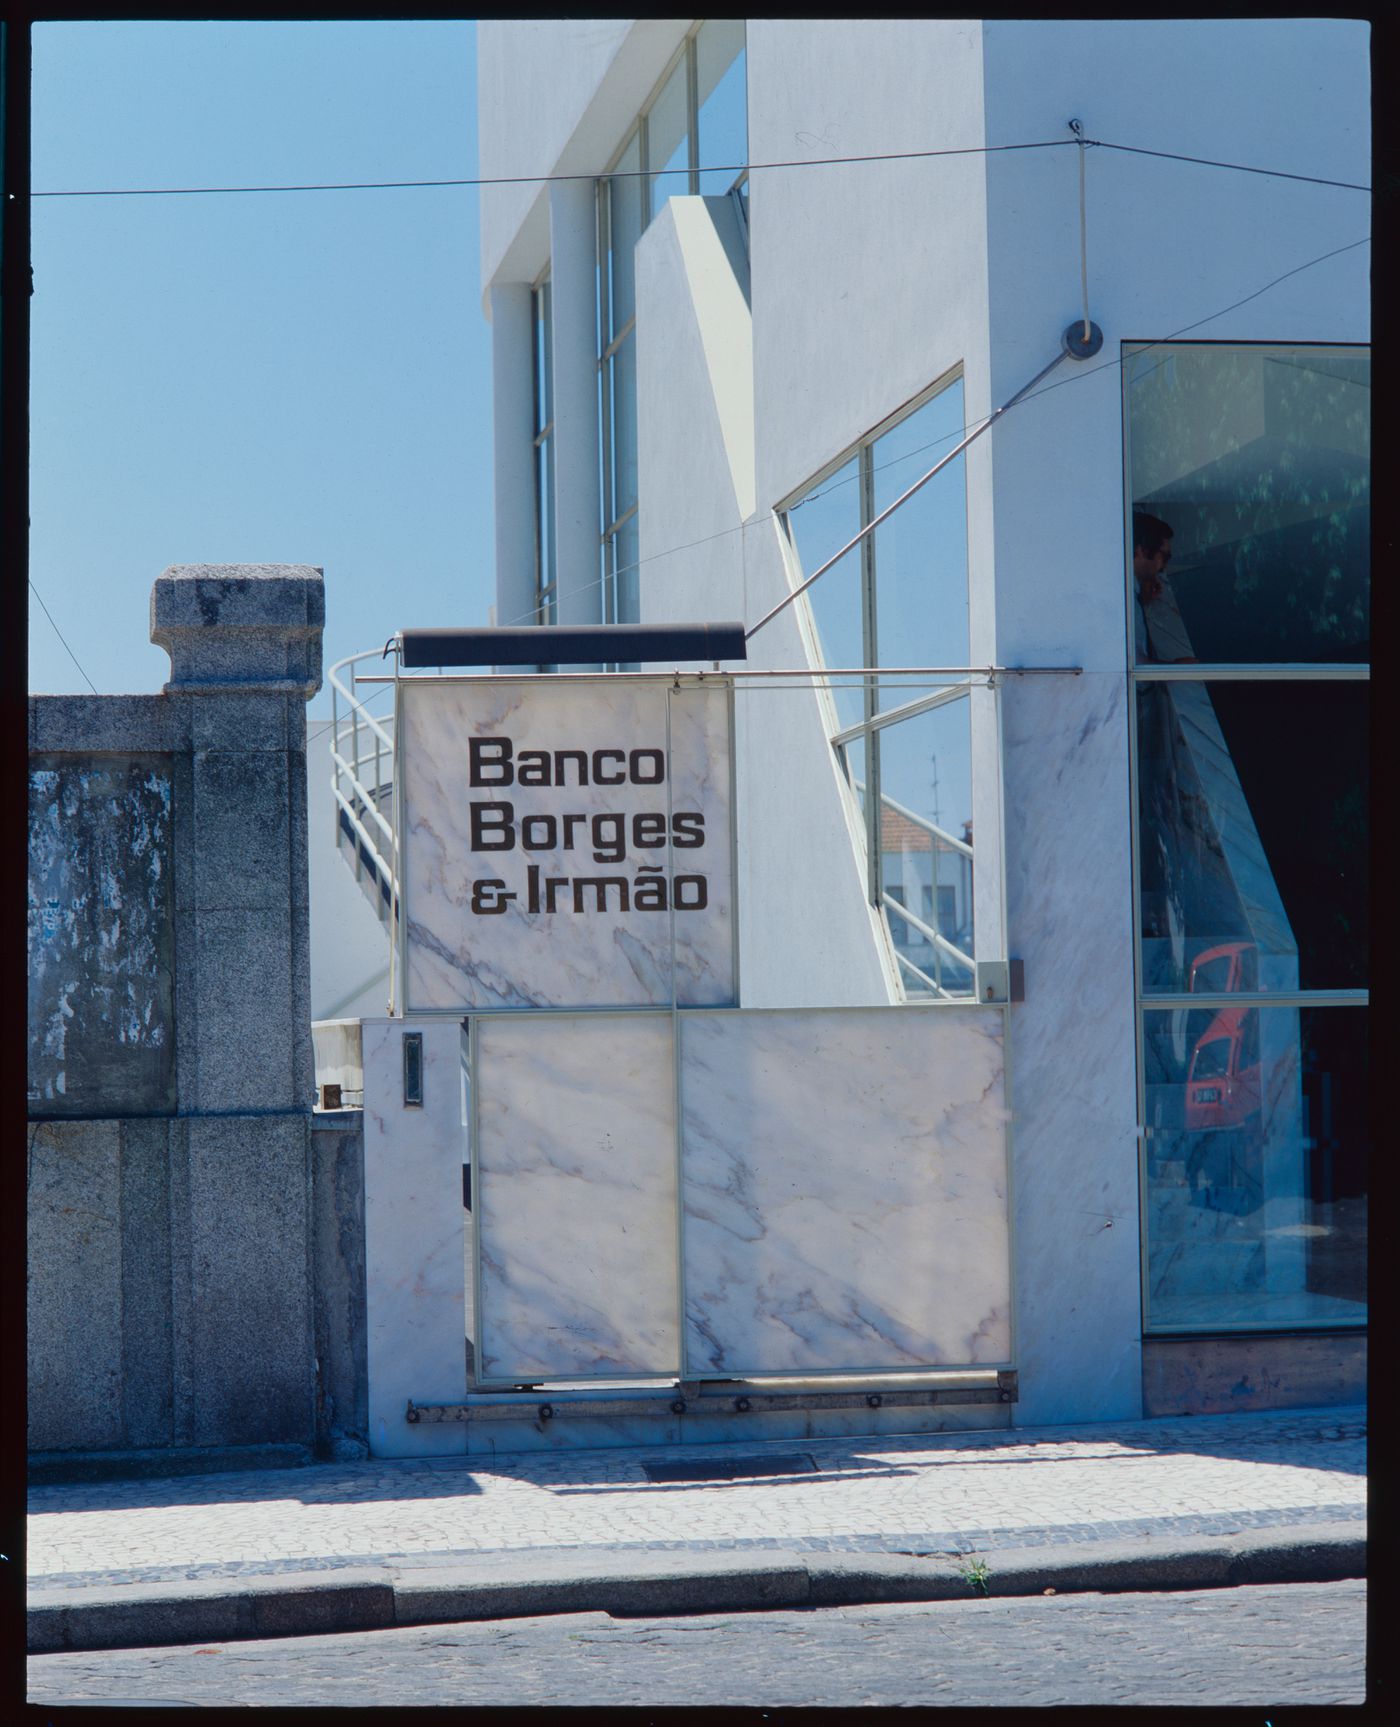 Detail view of sign of Banco Borges & Irmão II [Borges & Irmão bank II], Vila do Conde, Portugal